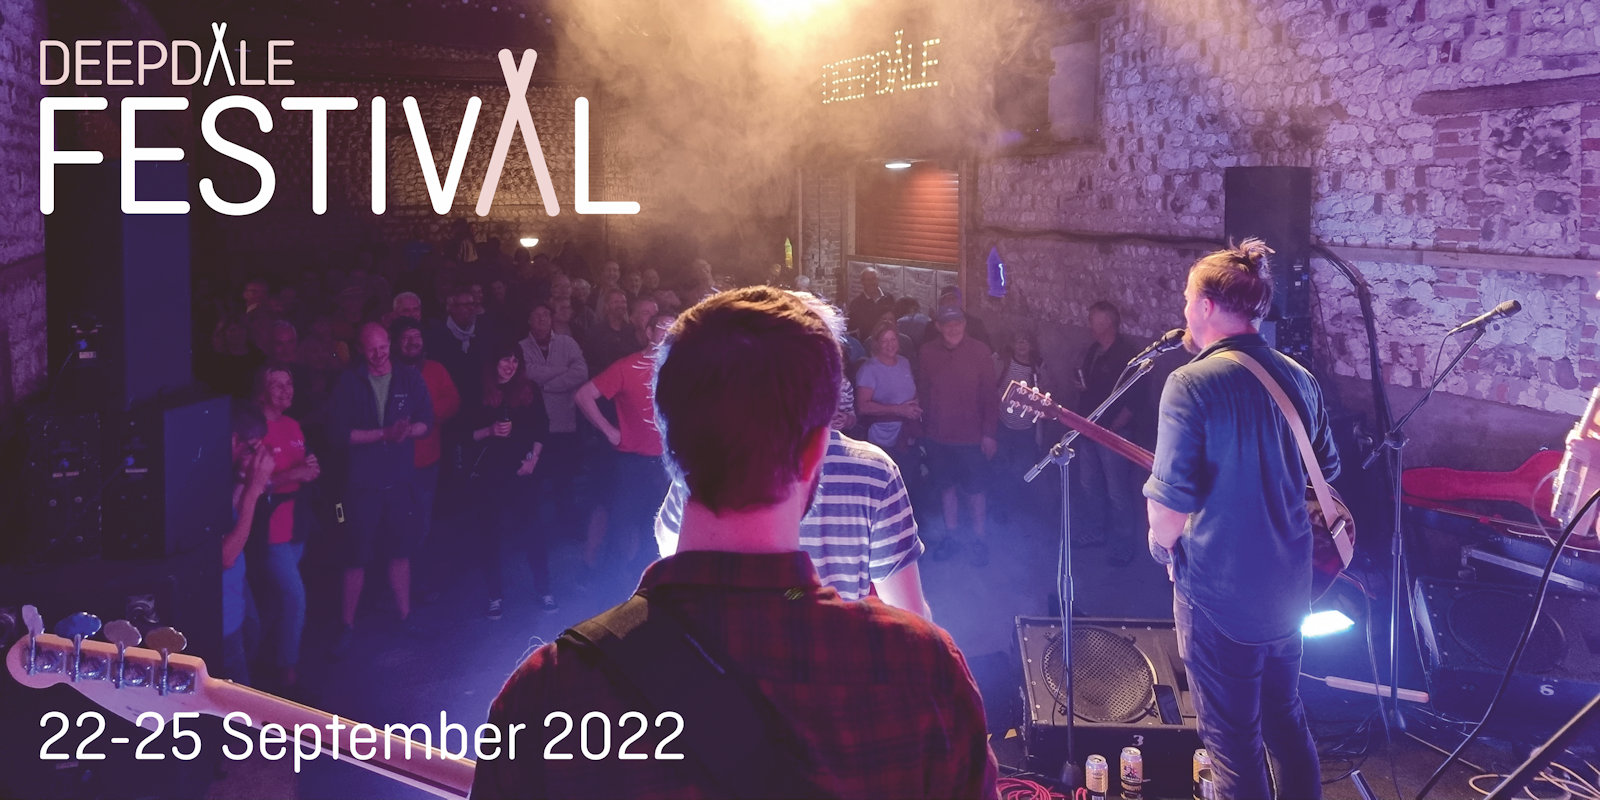 Deepdale Festival | 22 to 25 September 2022